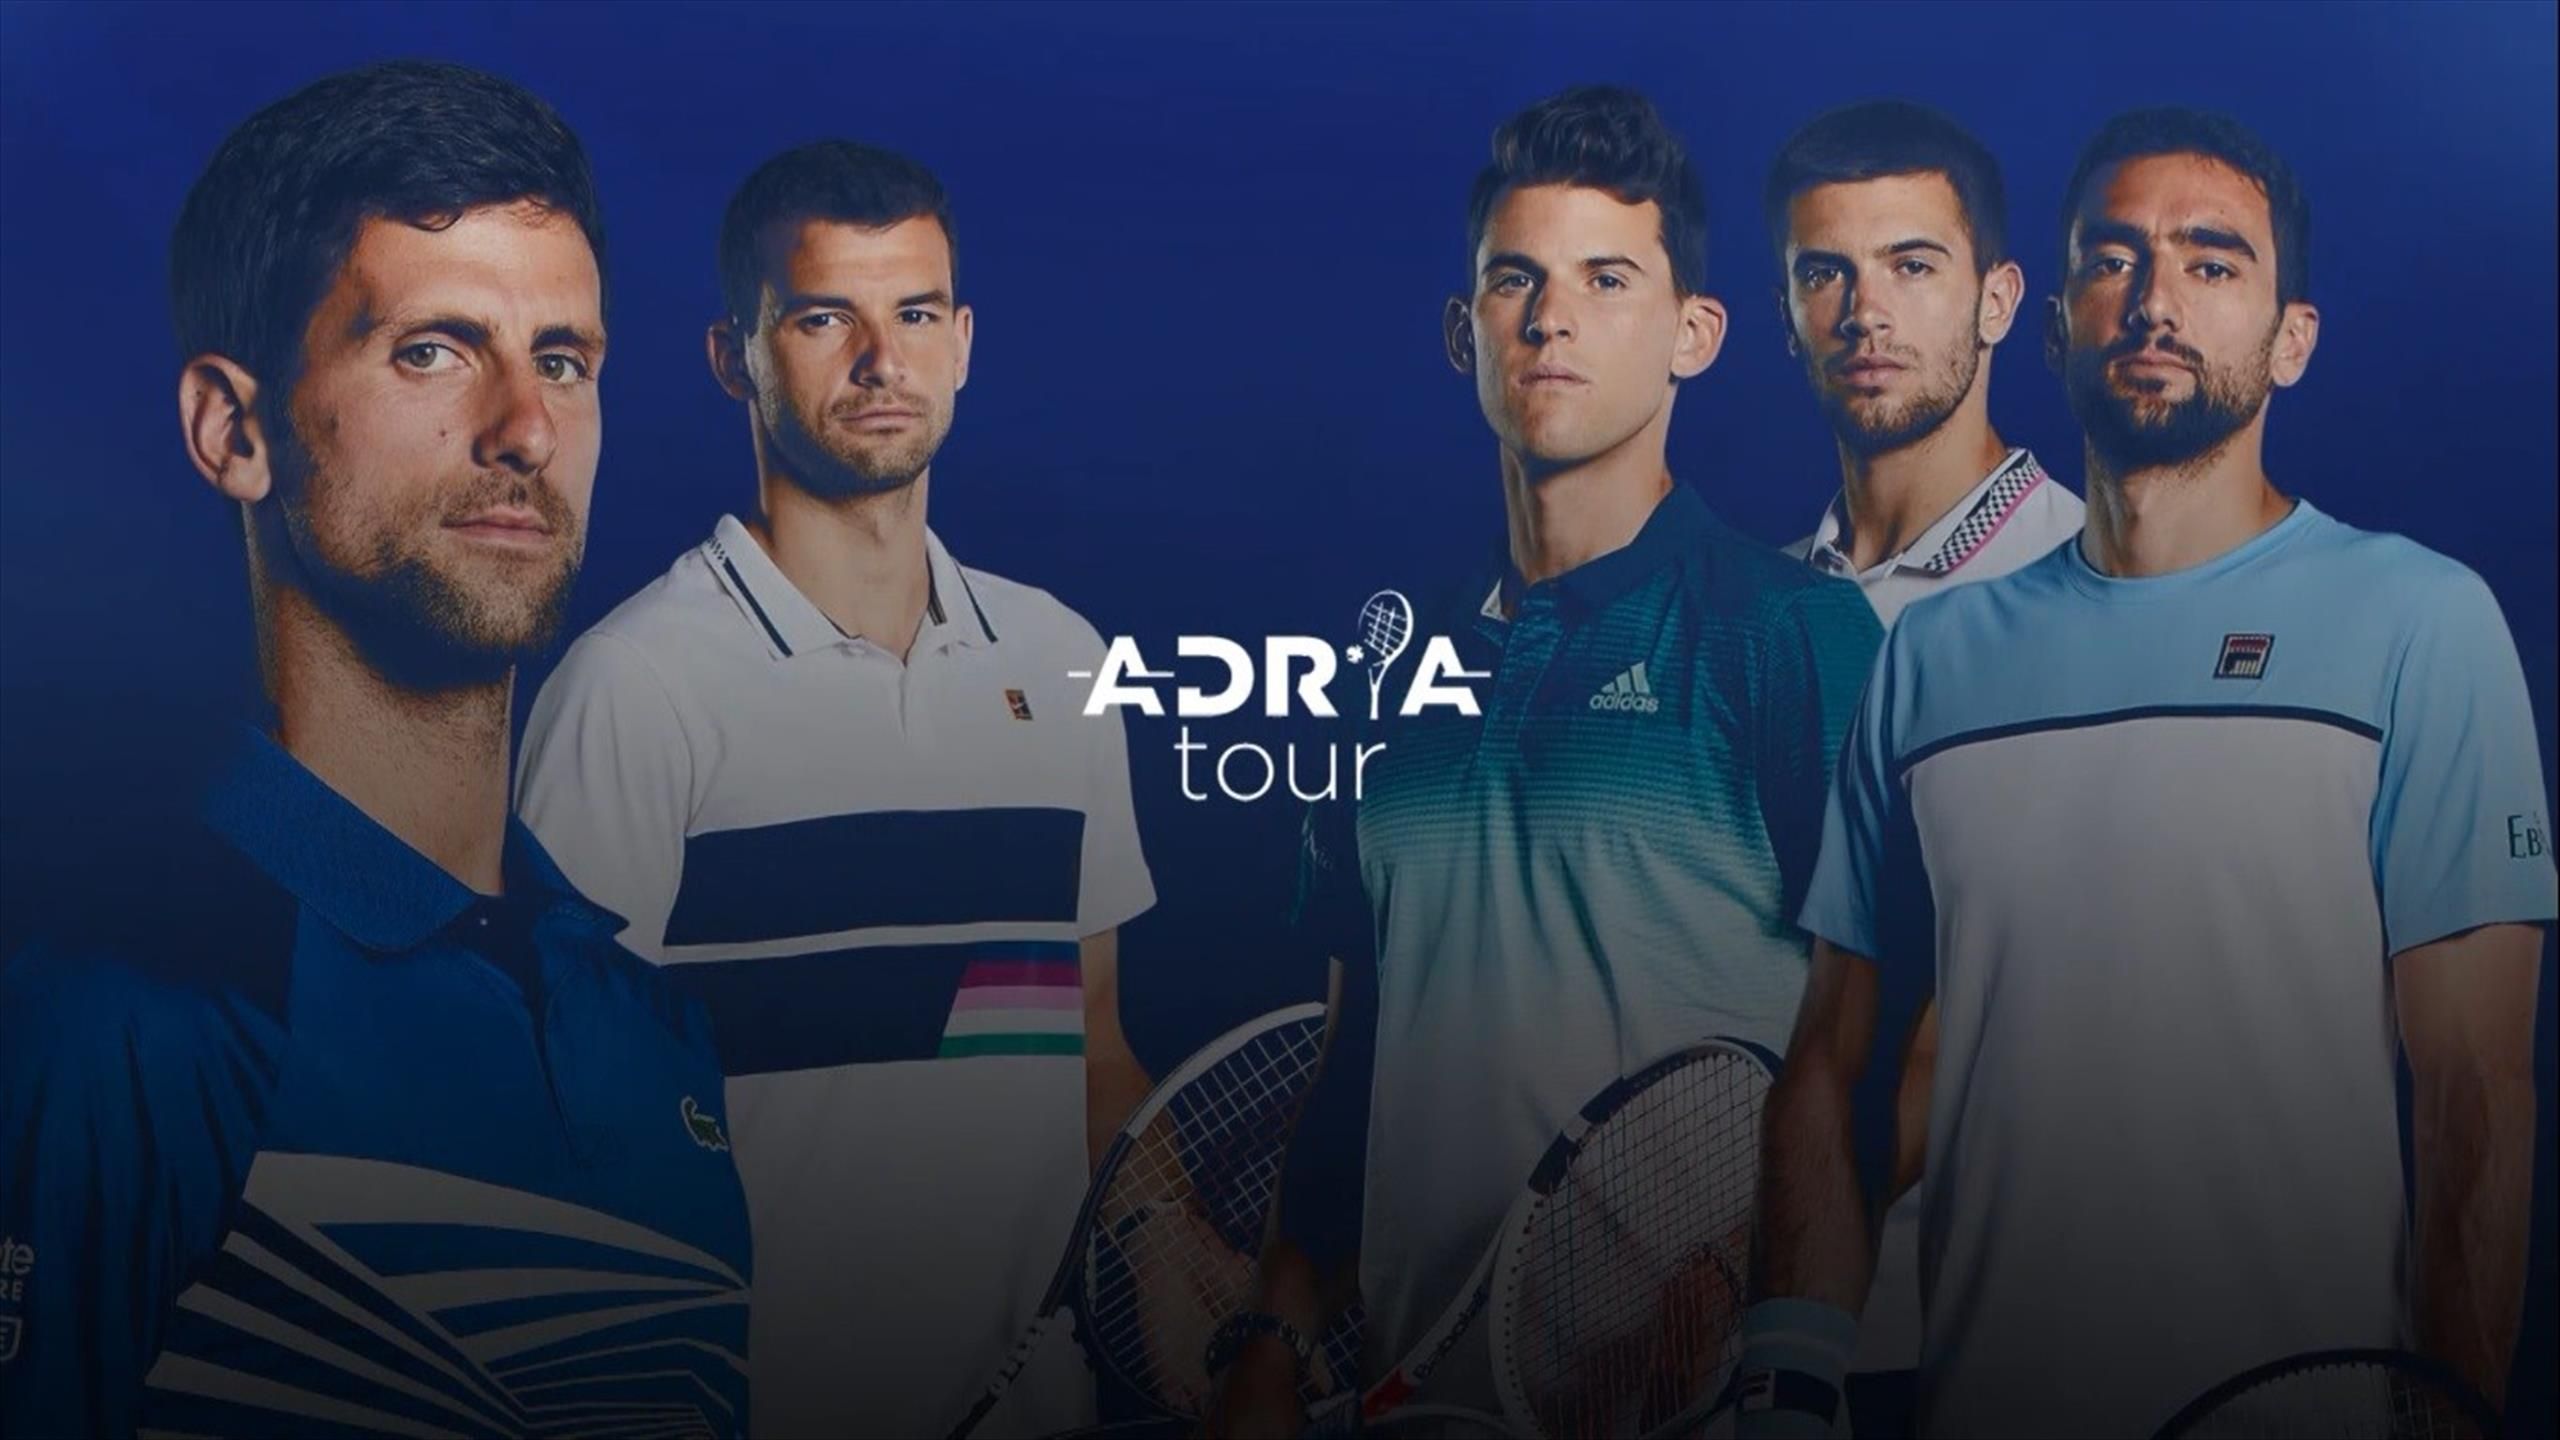 🎾📺 Sigue el Adria Tour Djokovic, Thiem y Dimitrov Eurosport 2 y Player -